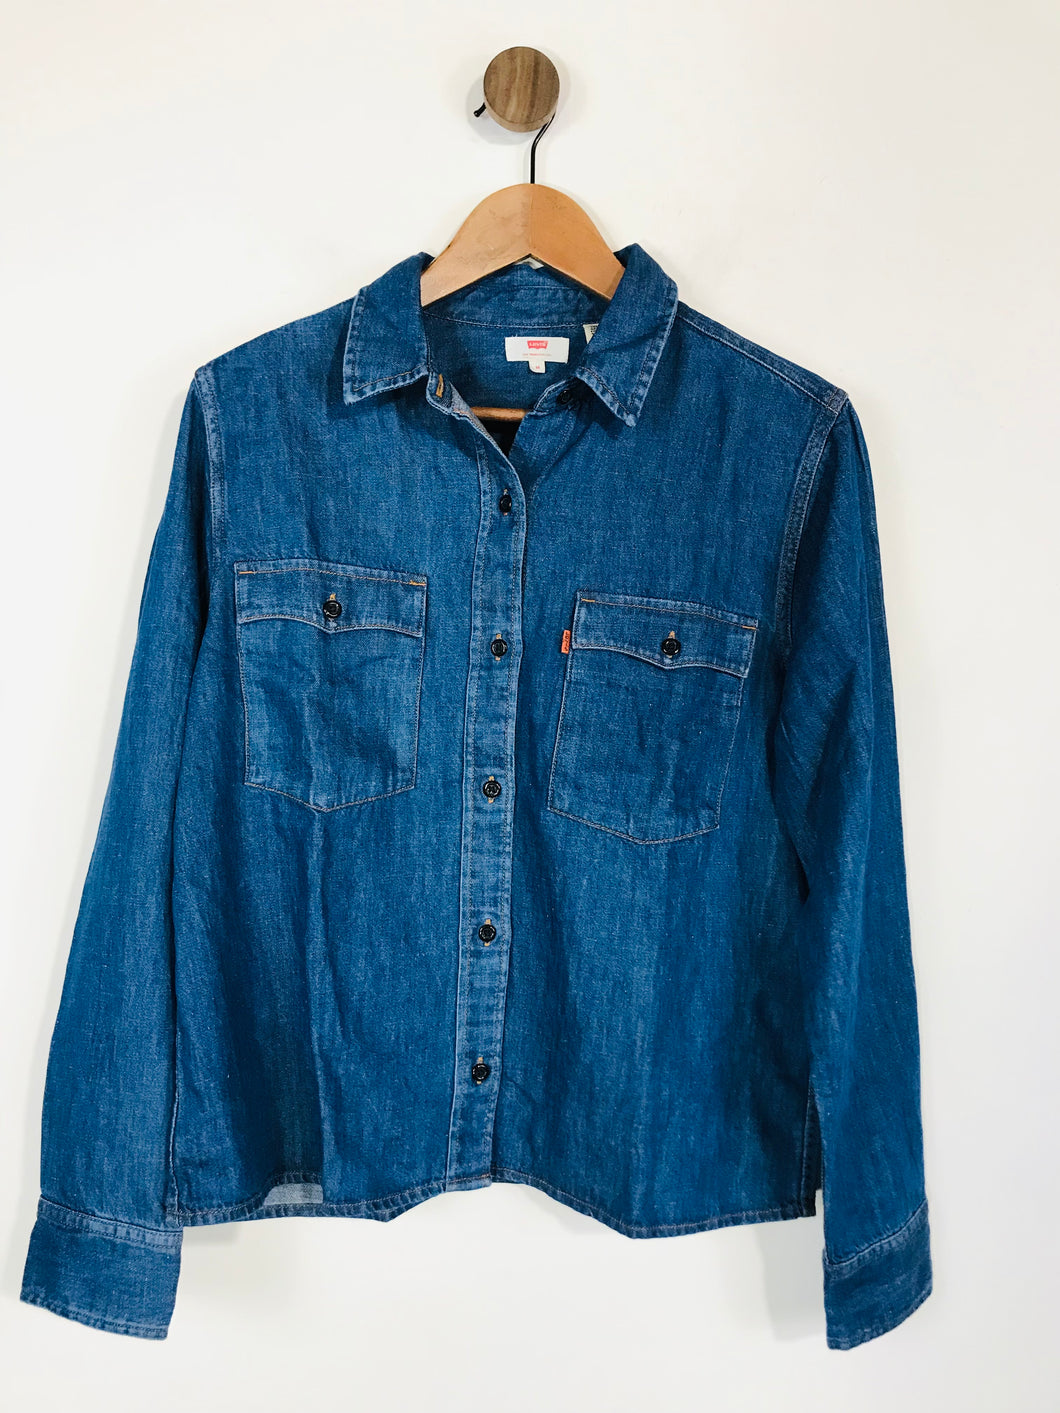 Levi’s Women's Denim Look Button-Up Shirt | M UK10-12 | Blue